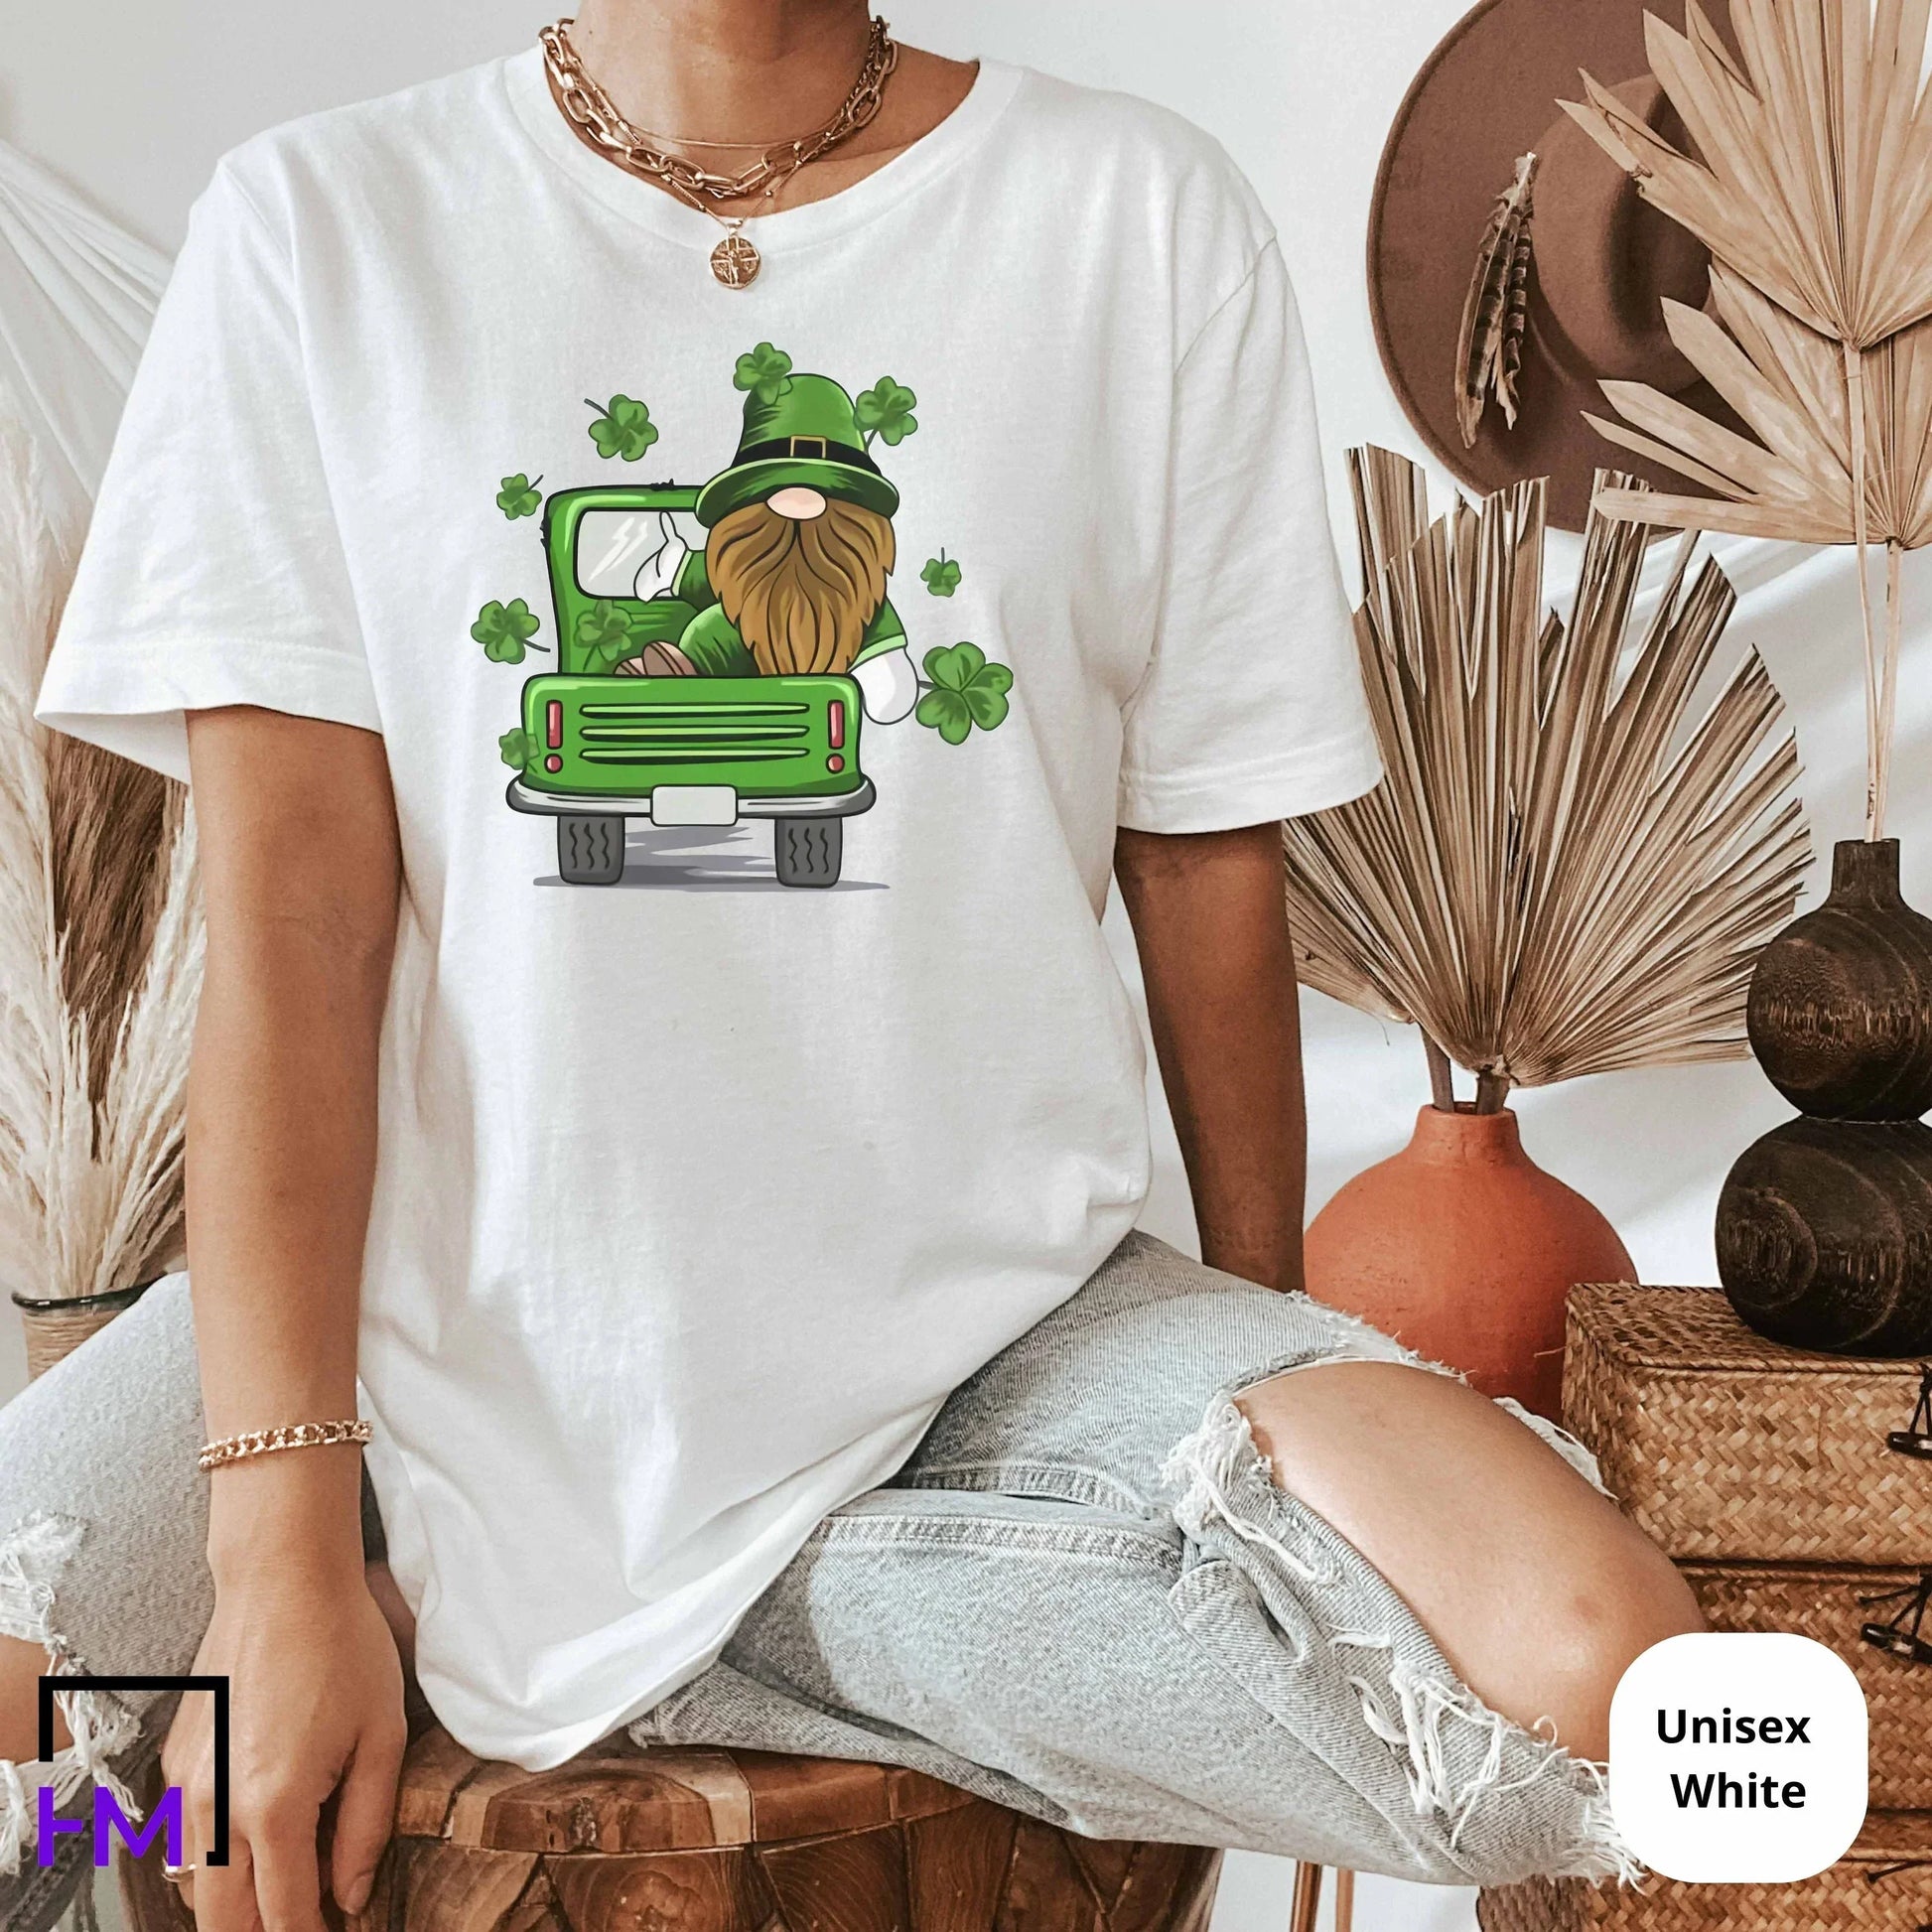 Gnome Shamrock Shirt, Irish Shirt Women, Cute Shamrock Shirt, Lucky Woman Shirt, Shamrock Clover Shirt, St Patrick Day Shirt, St. Pattys Day